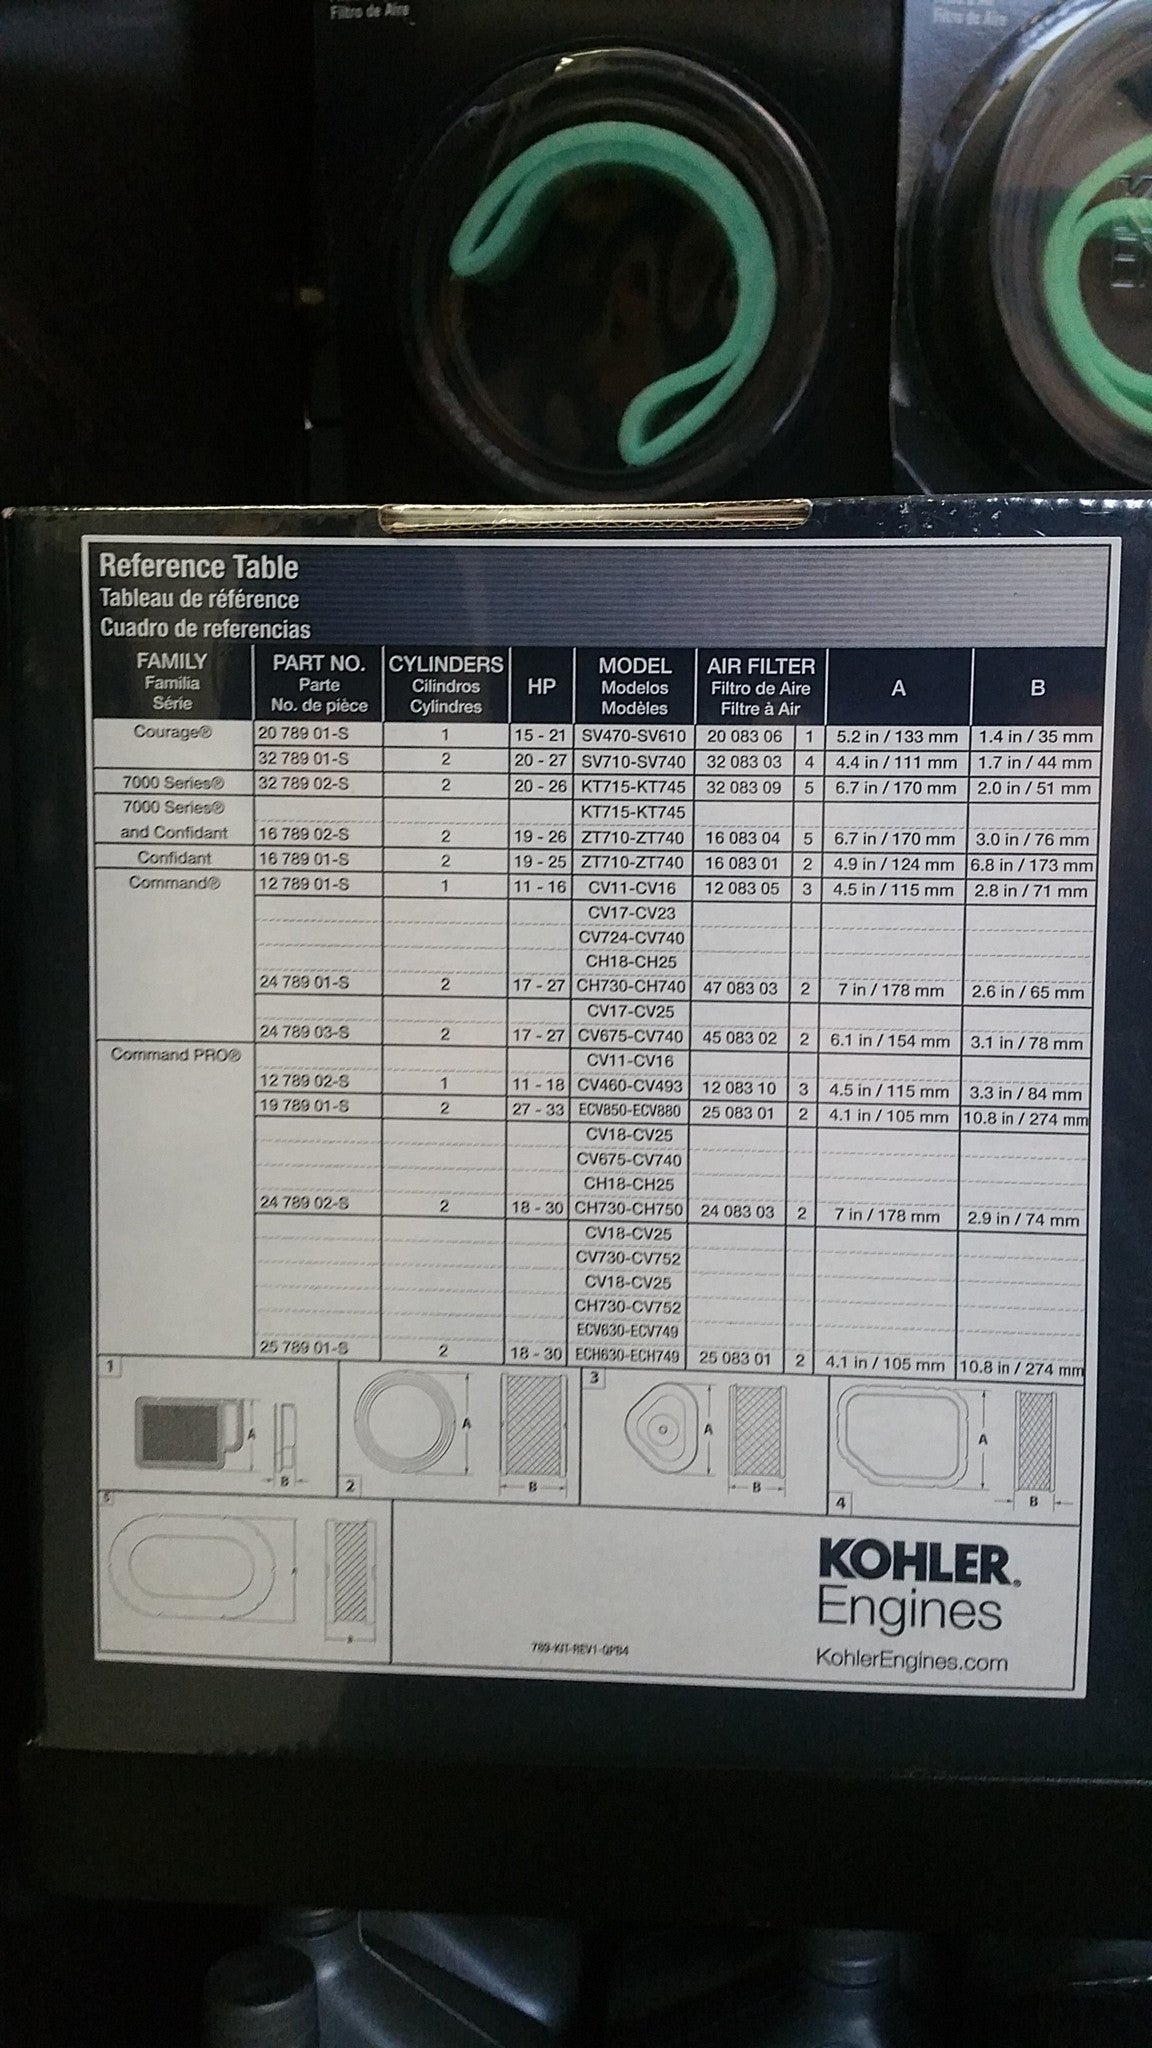 32 789 02-S Kohler 7000 Series Maintenance Kit KT715, KT725, KT730, KT735, KT740, and KT745